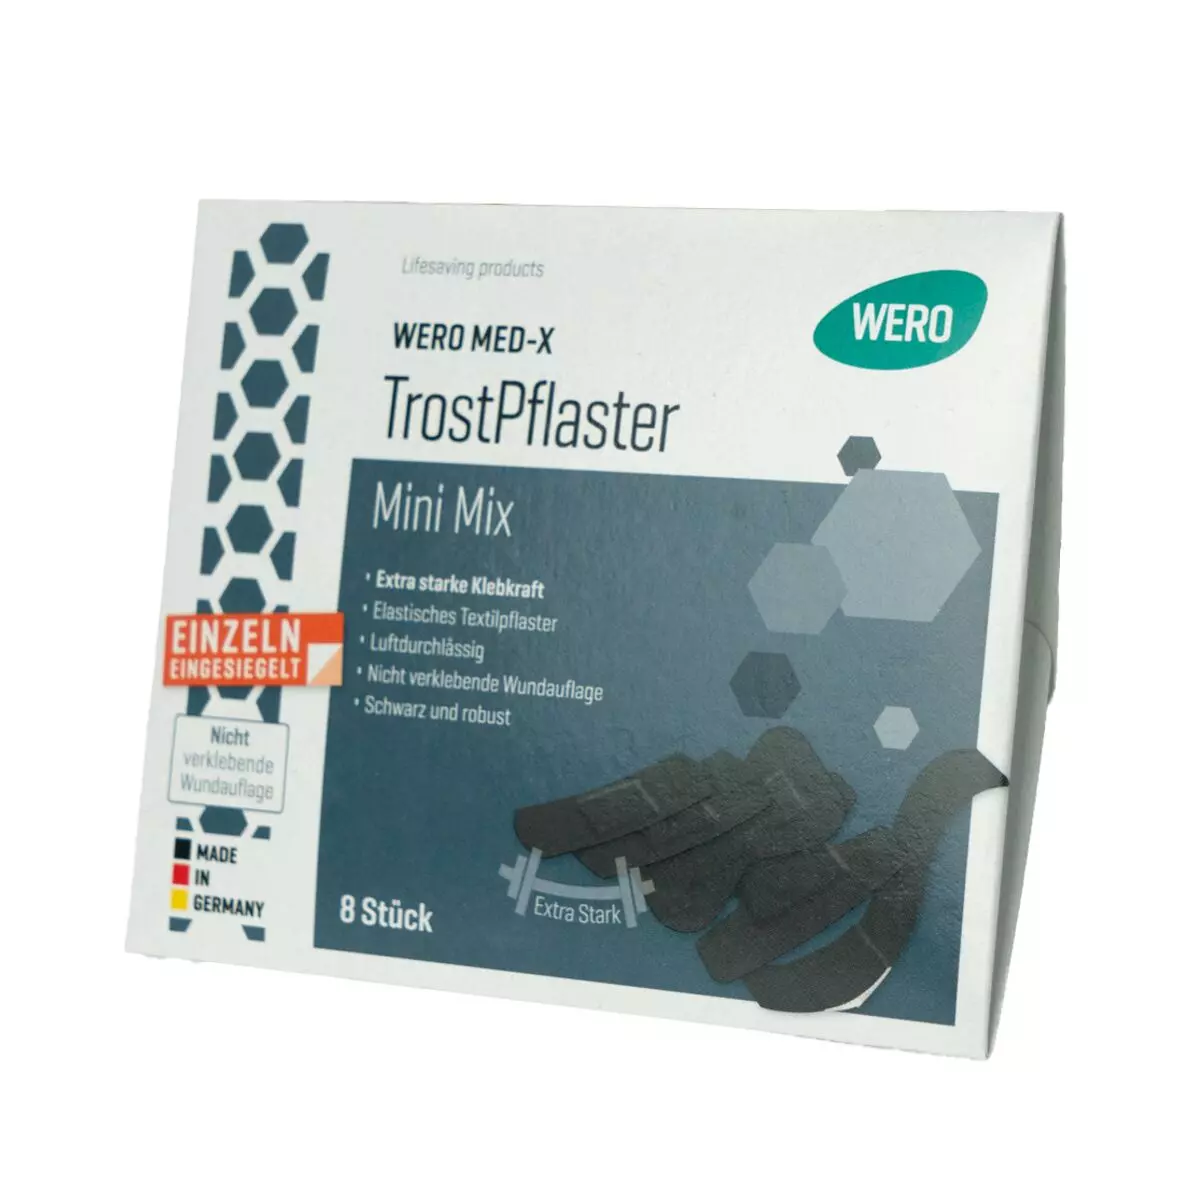 WERO MED-X® TrostPflaster Mini Mix